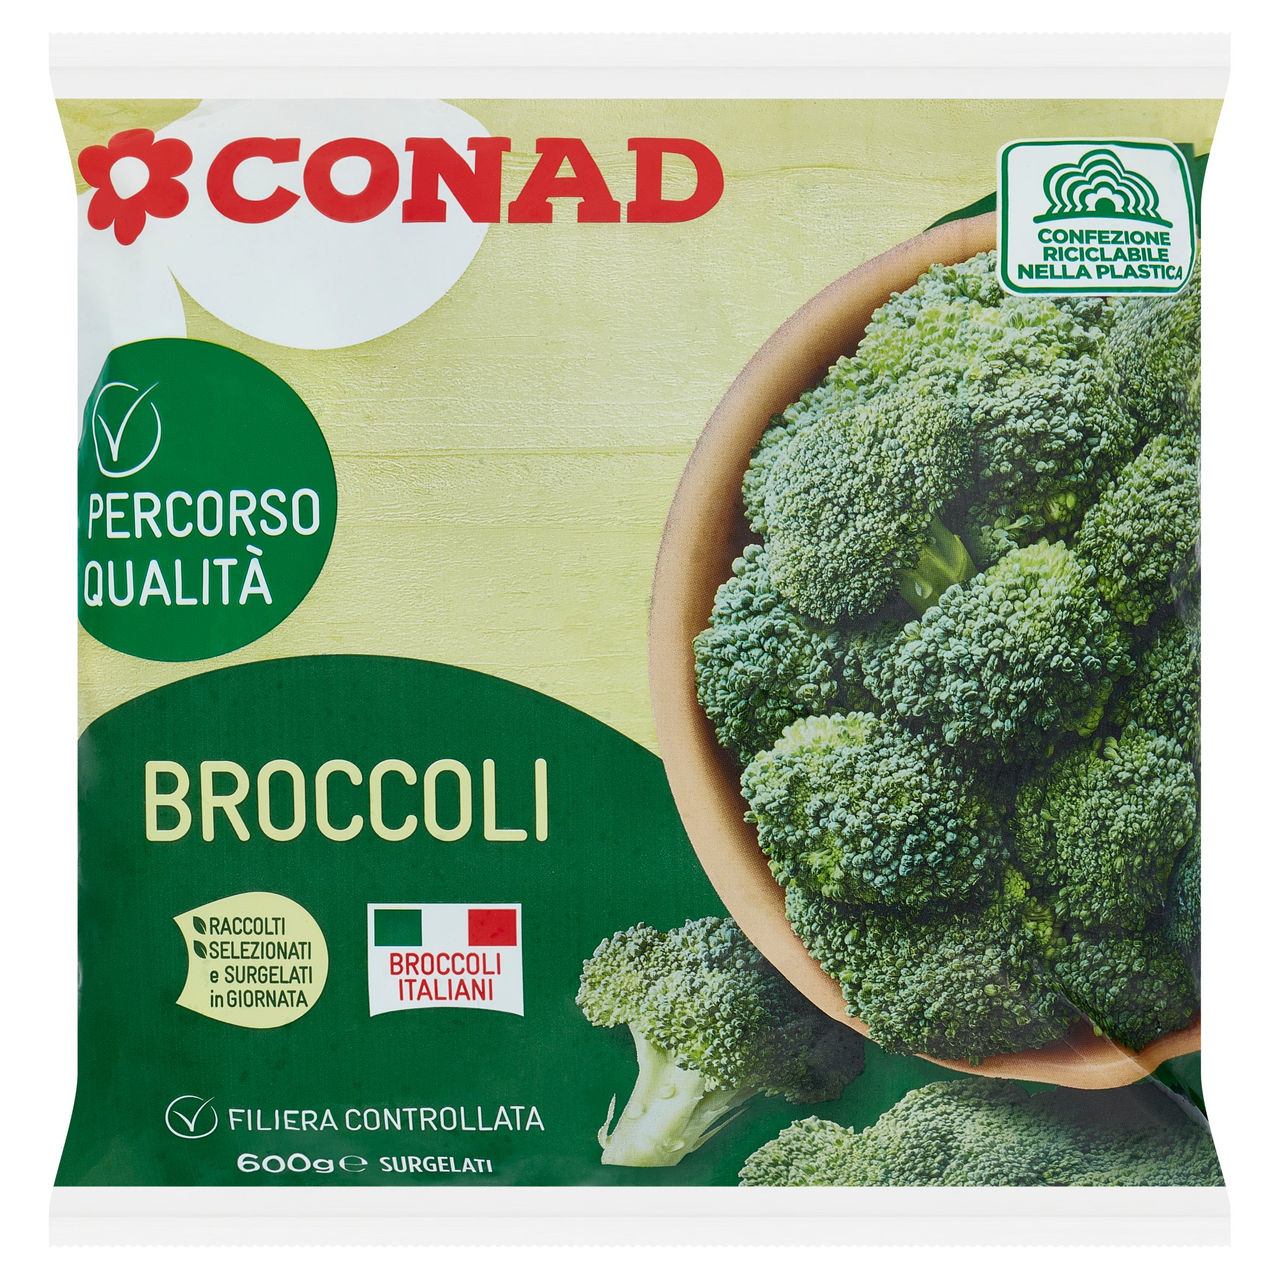 CONAD Percorso Qualità Broccoli Surgelati 600 g